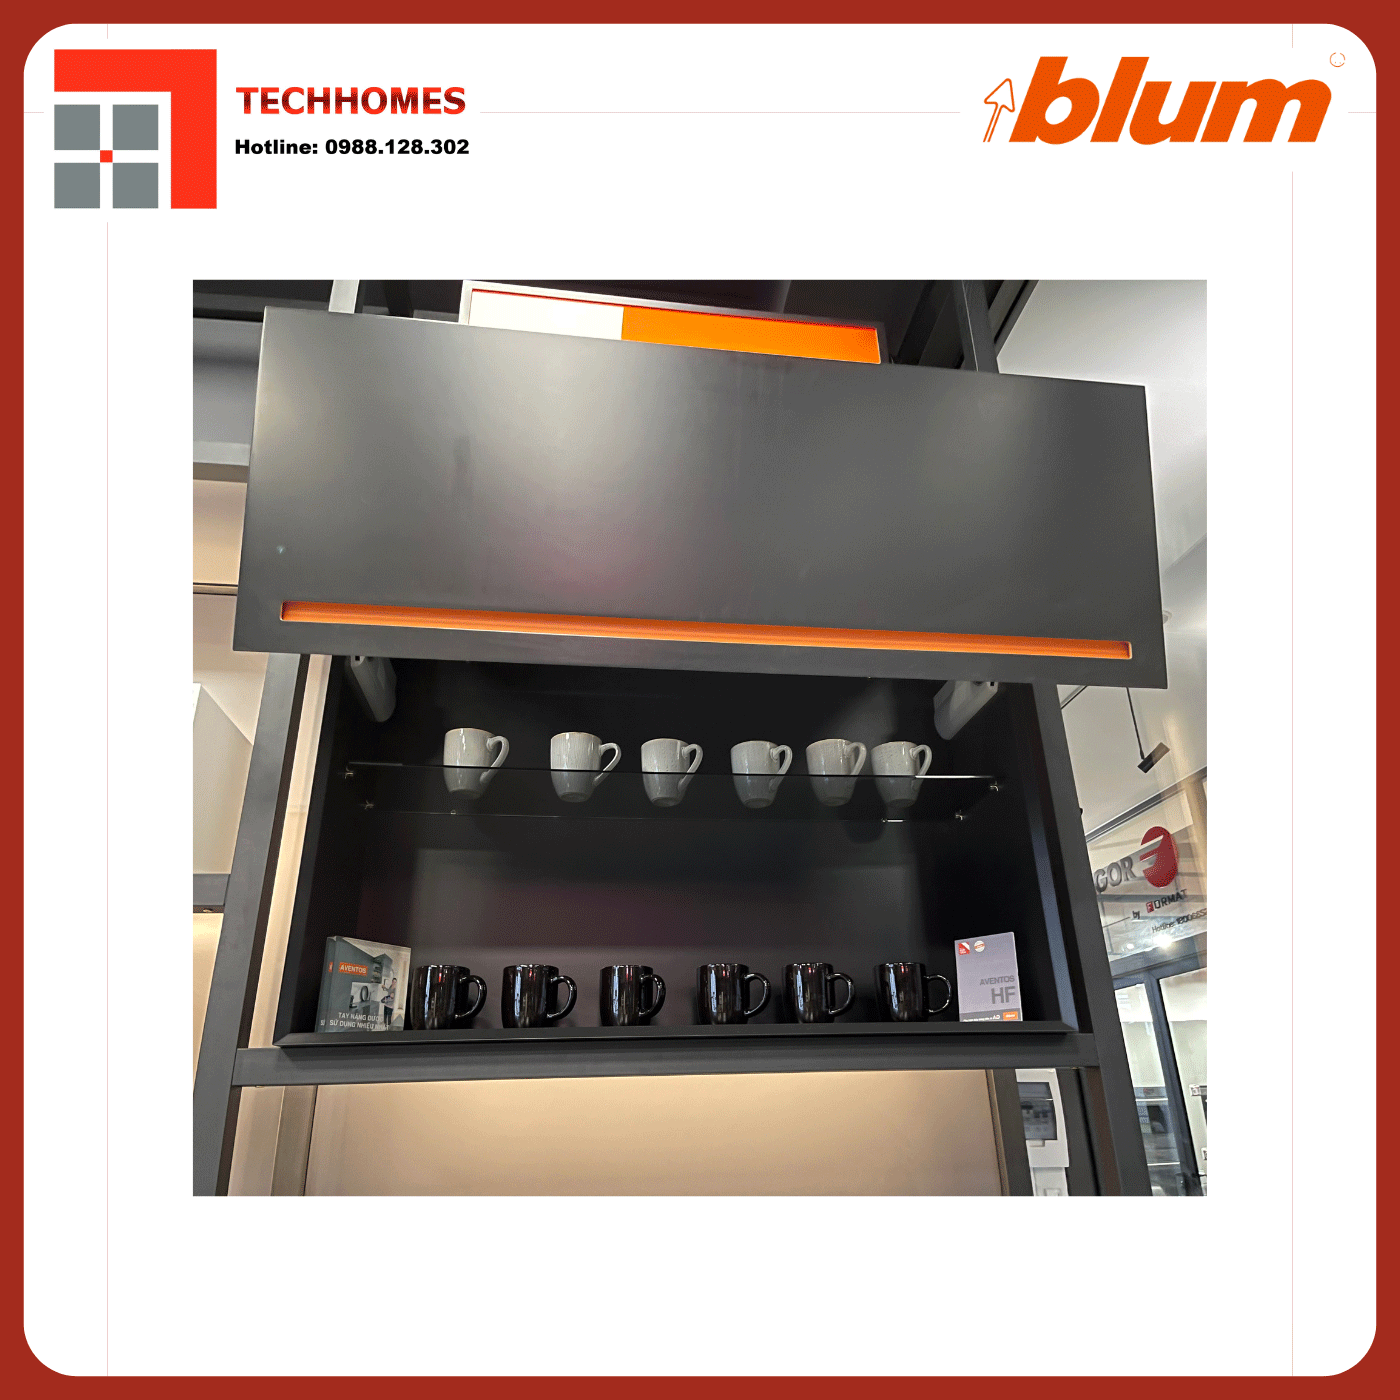 TAY NÂNG BLUM HF22 trọn bộ tay nâng Blum f22 nhập khẩu chính hãng Áo  - Blum f22